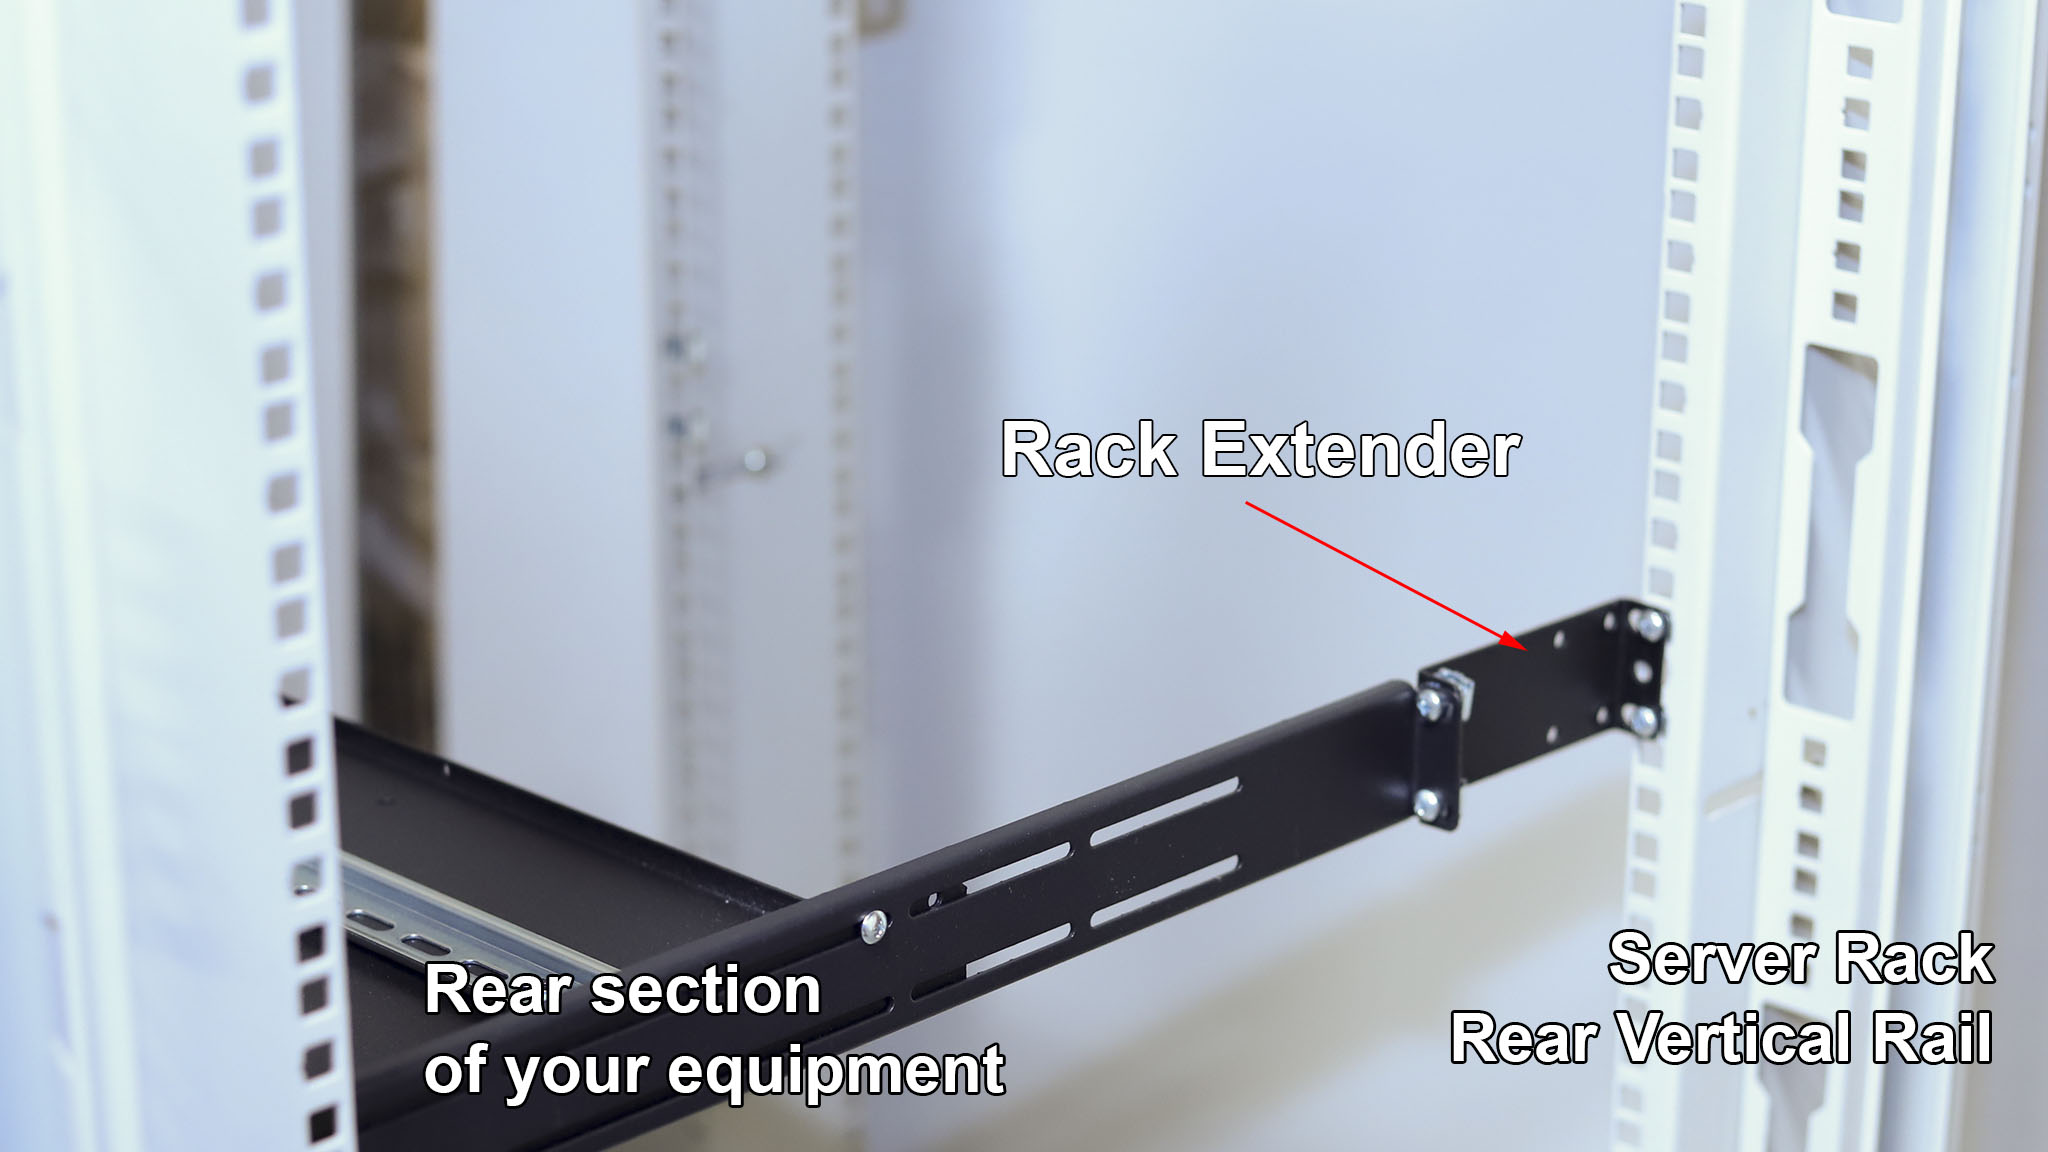 What is IAB104V10-2U rack extender